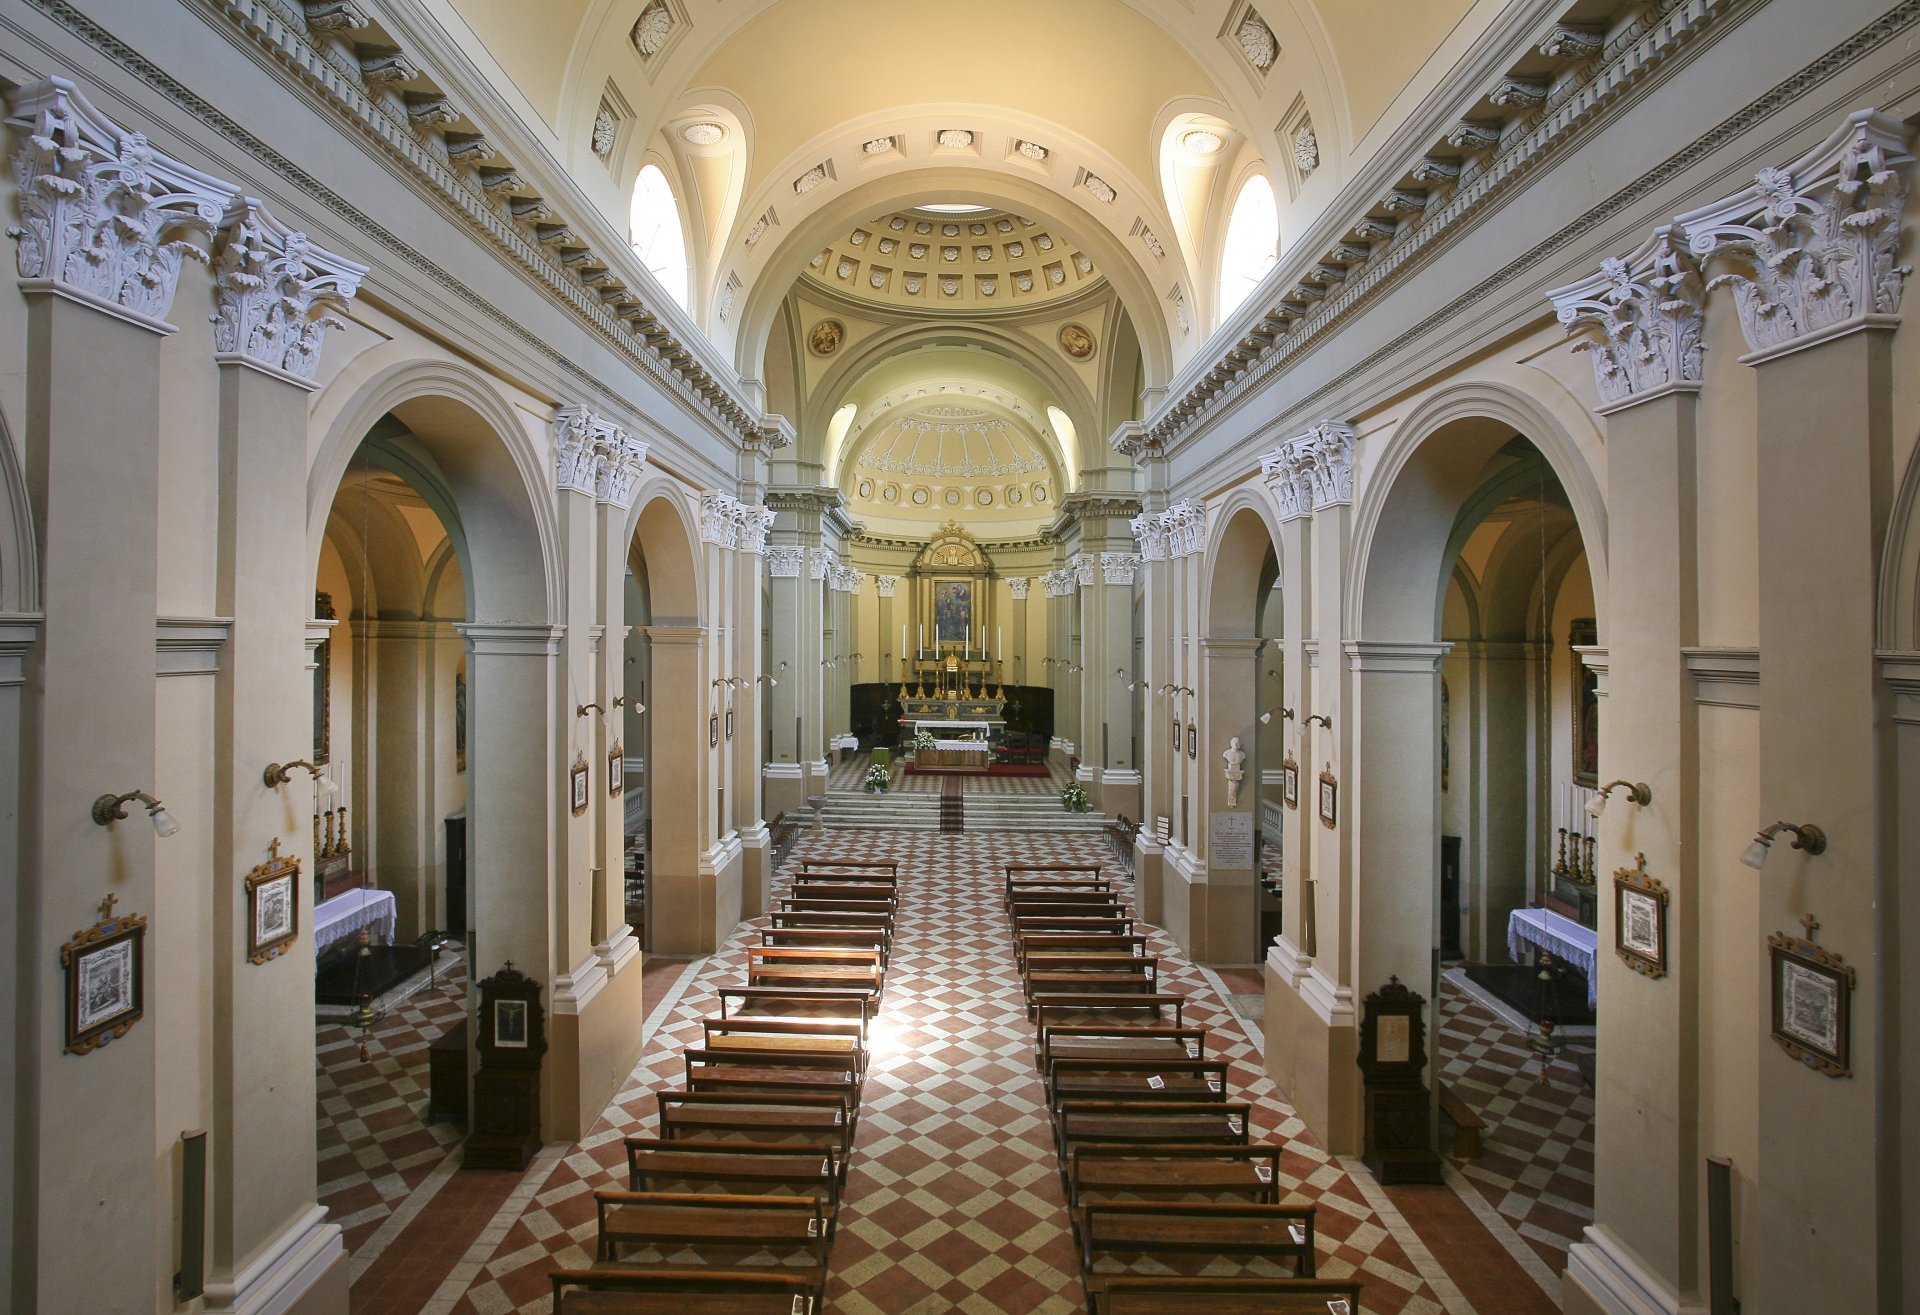 Verucchio | Chiesa Collegiata Foto(s) von Paritani